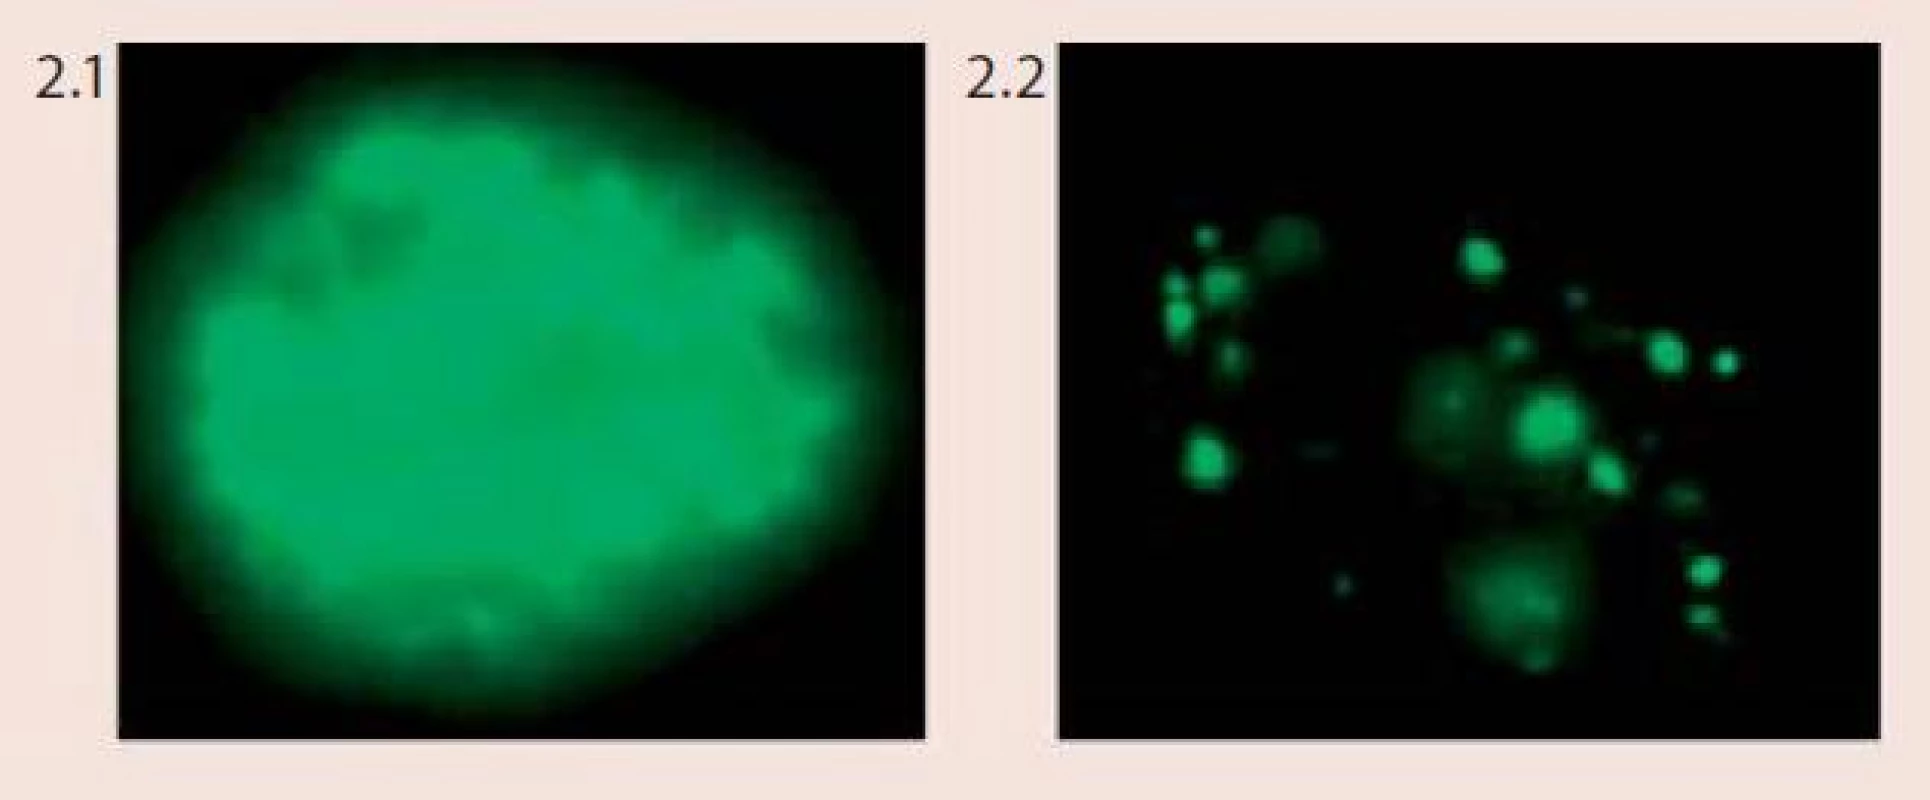 Vzor barvení buněk napadených lidským papilomavirem (HPV) při použití Vysis Cervical FISH Probe Kit (foto Laboratoř molekulární cytogenetiky ÚEB PřF Brno)
Obr. 2.1 Difuzní vzor barvení (epizomální status viru)
Obr. 2.2 Tečkovaný vzor barvení (integrovaný status viru)